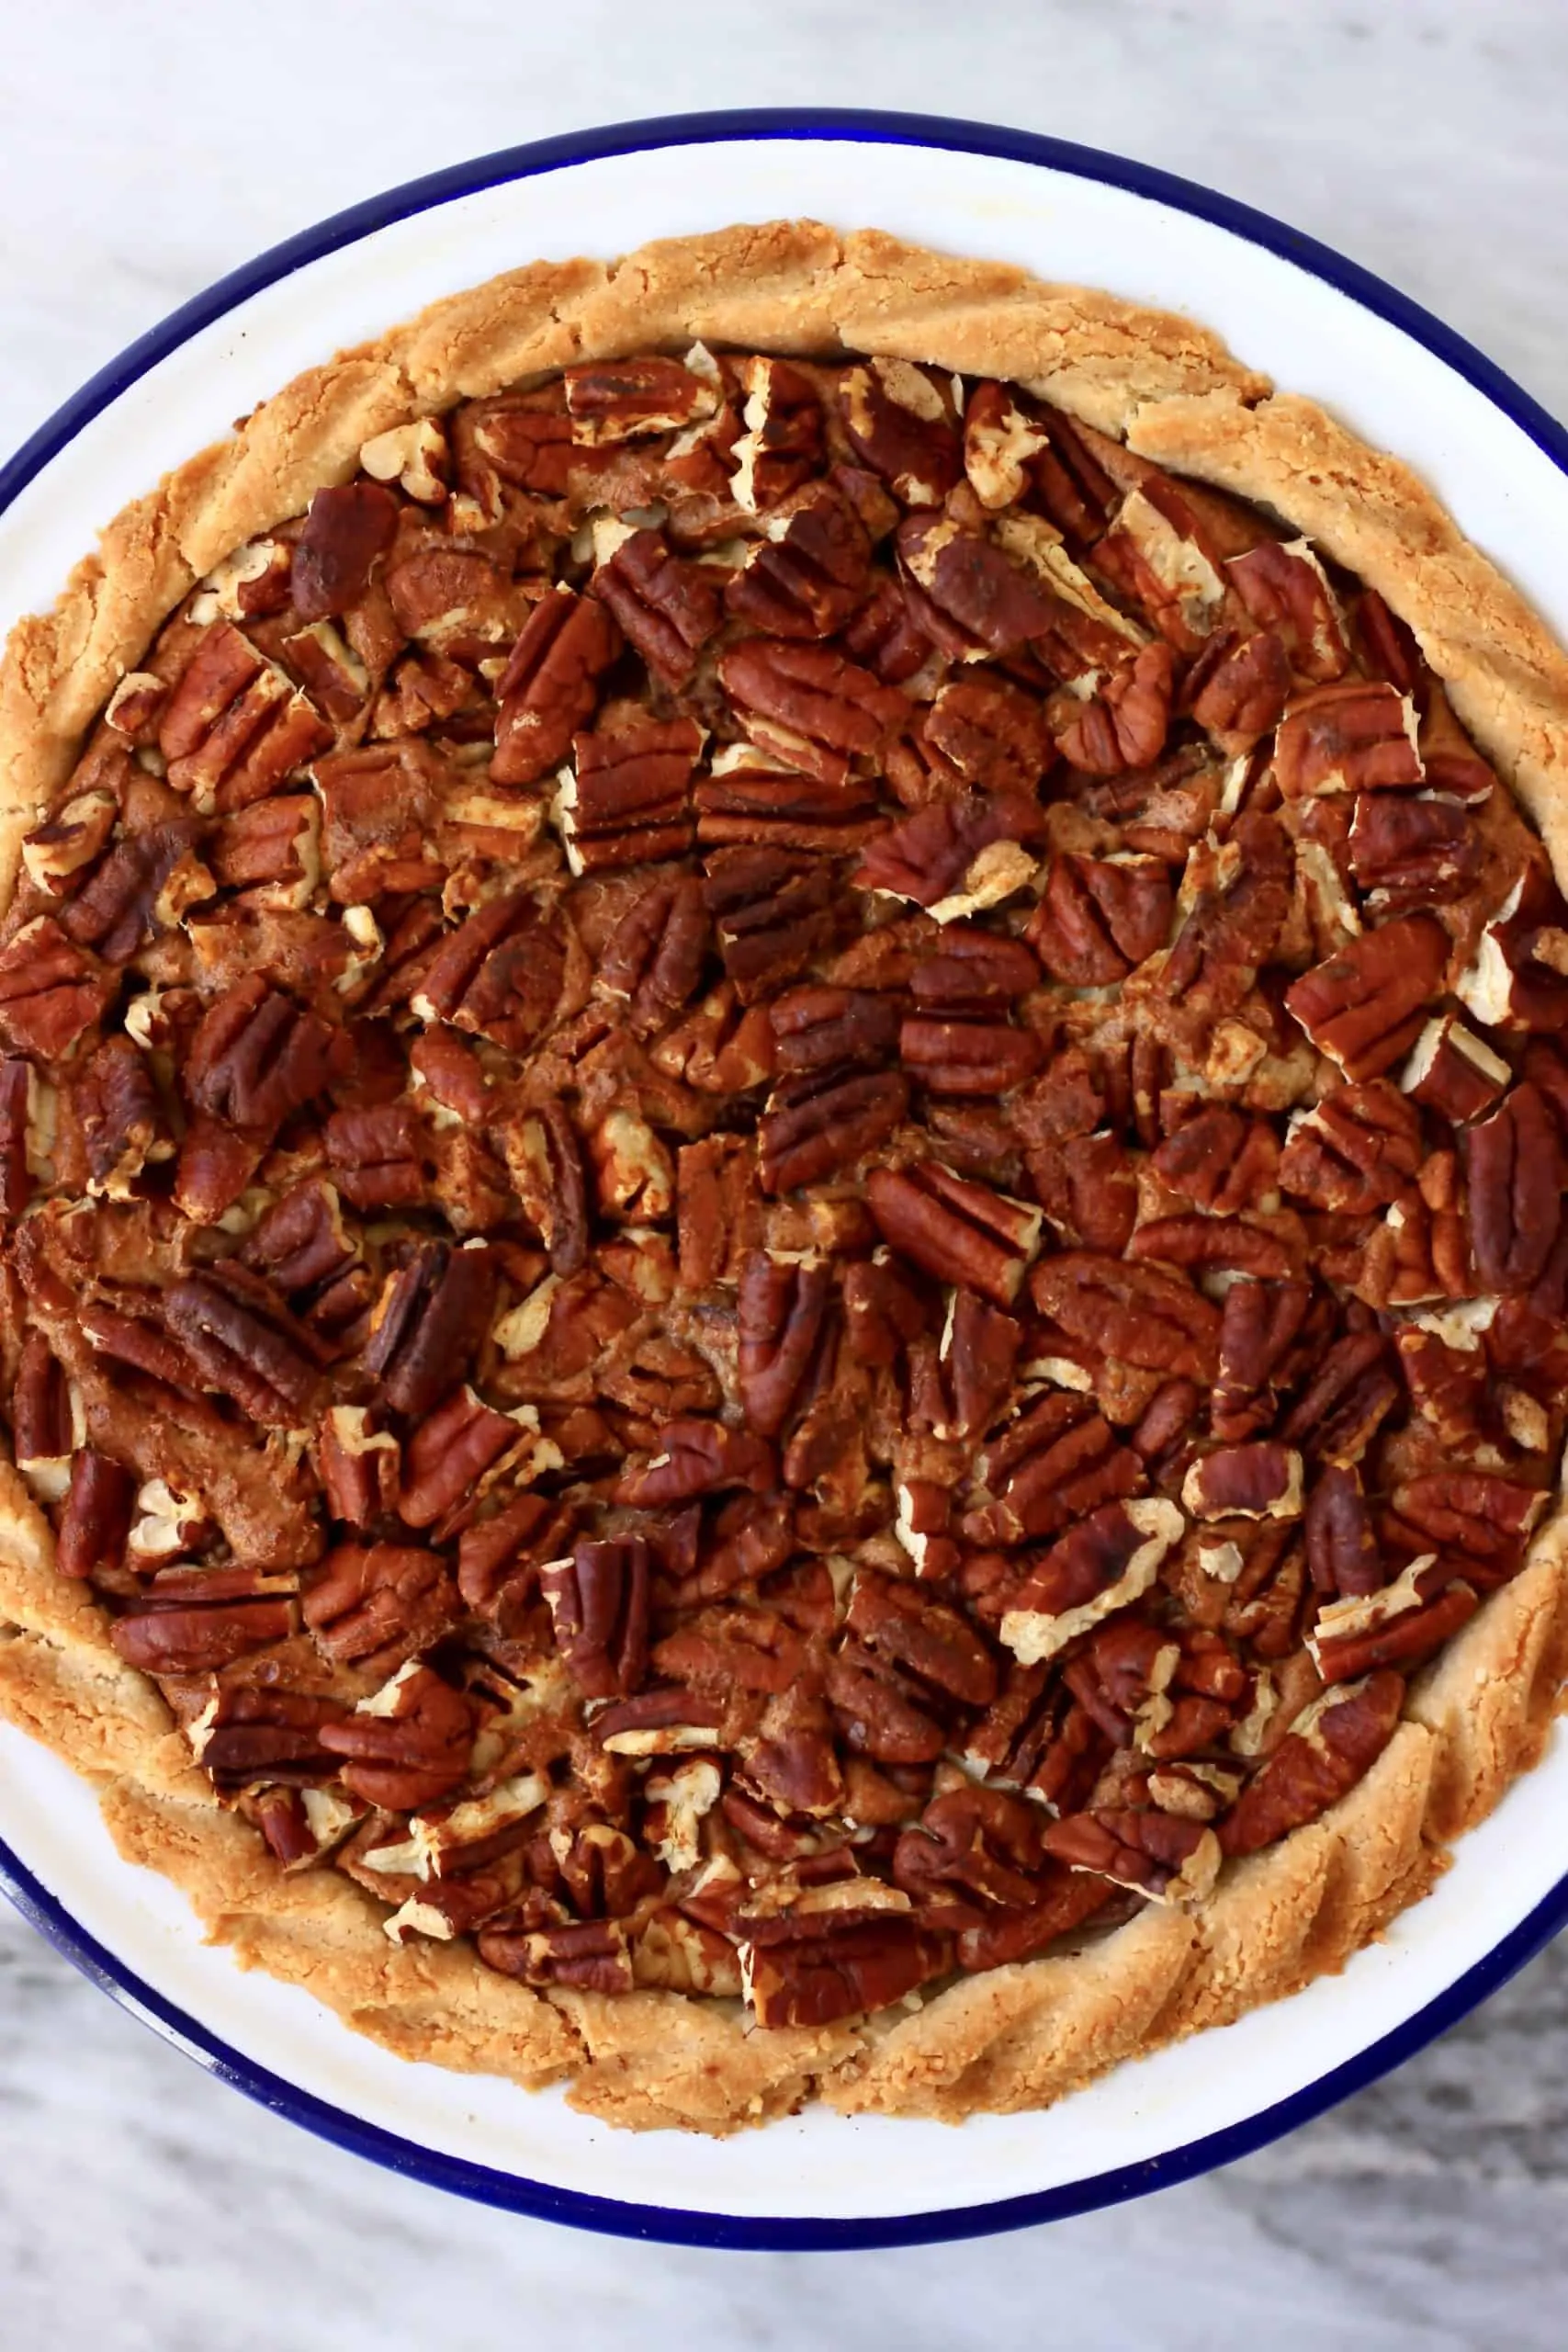 A gluten-free vegan pecan pie in a pie dish